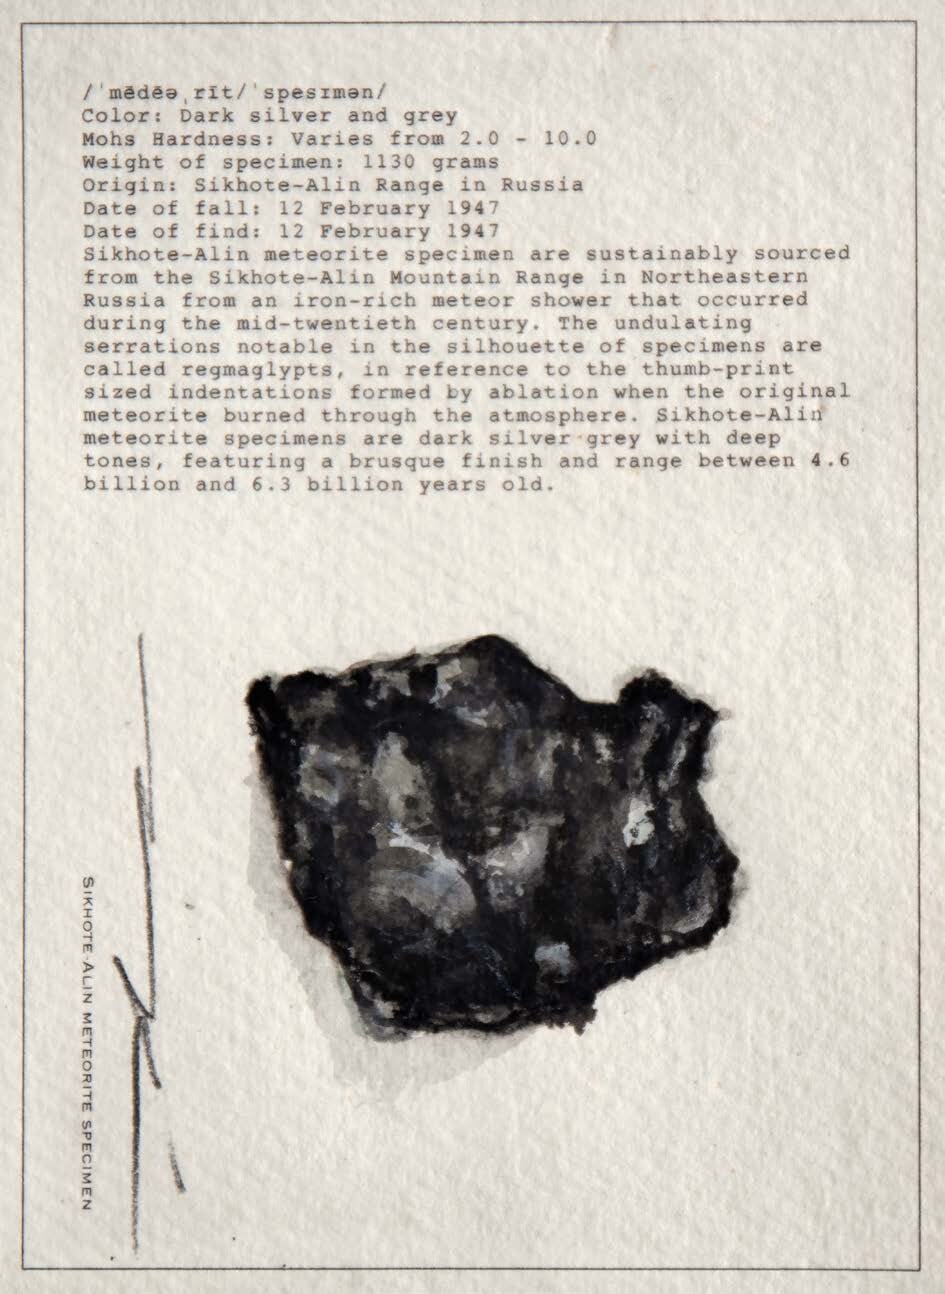 Charcoal sketch of meteorite.